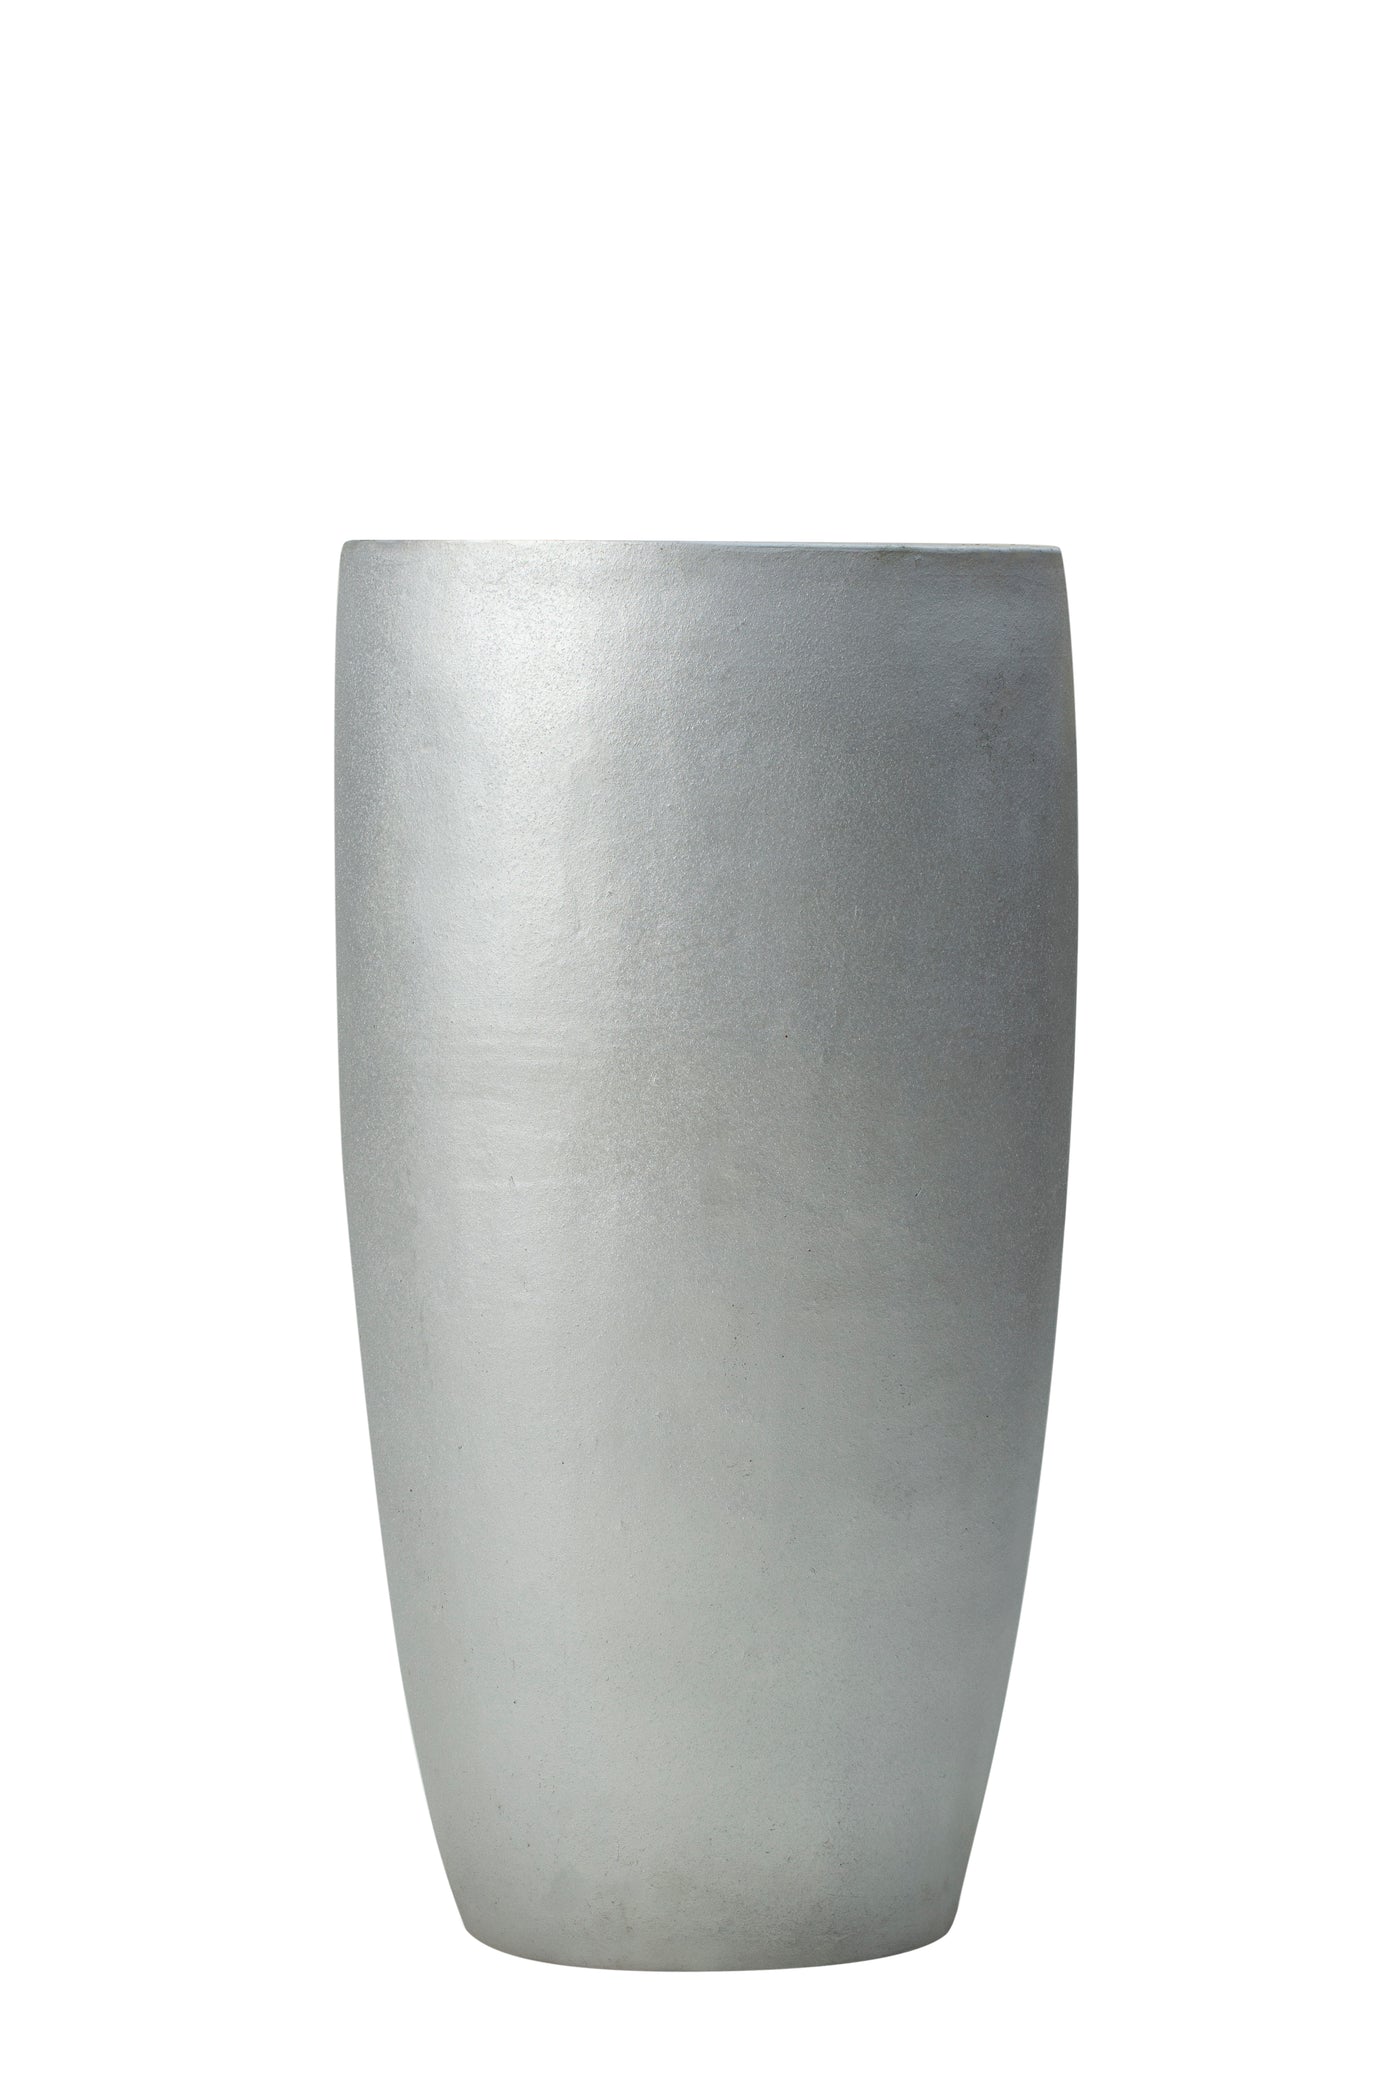 Ghiveci ceramic Partner extra 46X90 cm argintiu